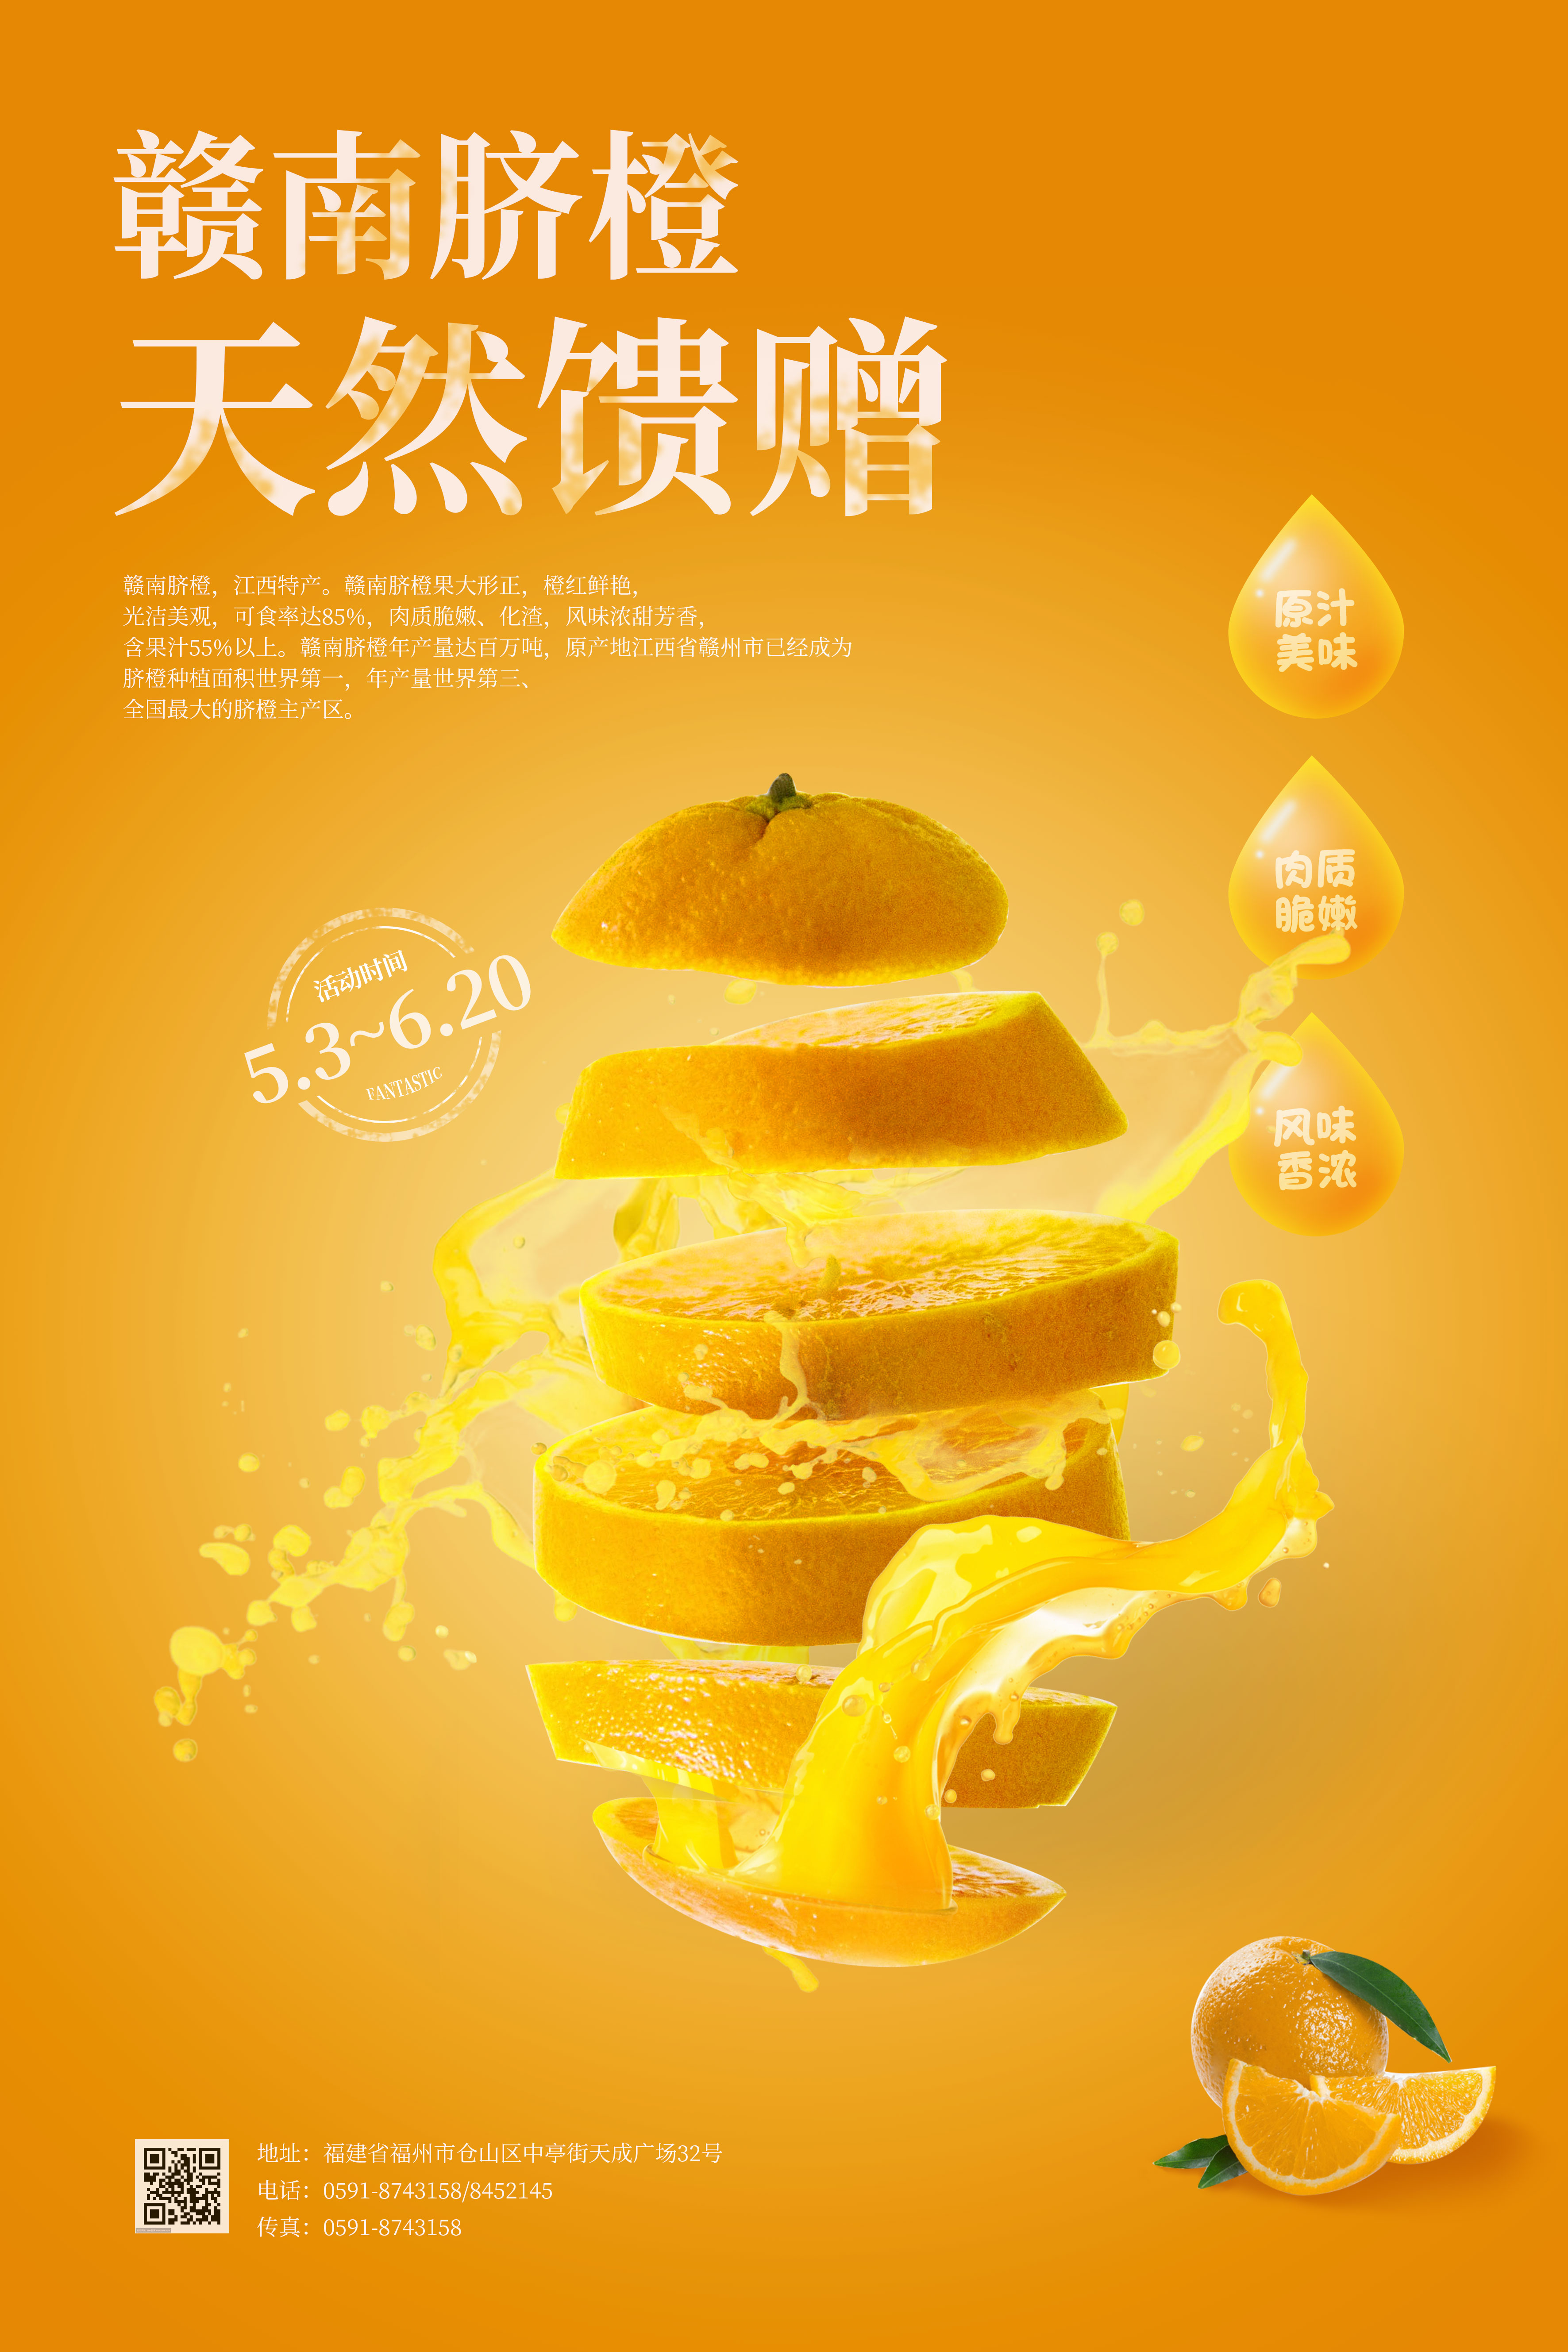 赣南脐橙橙黄色创意橙子水果海报图片